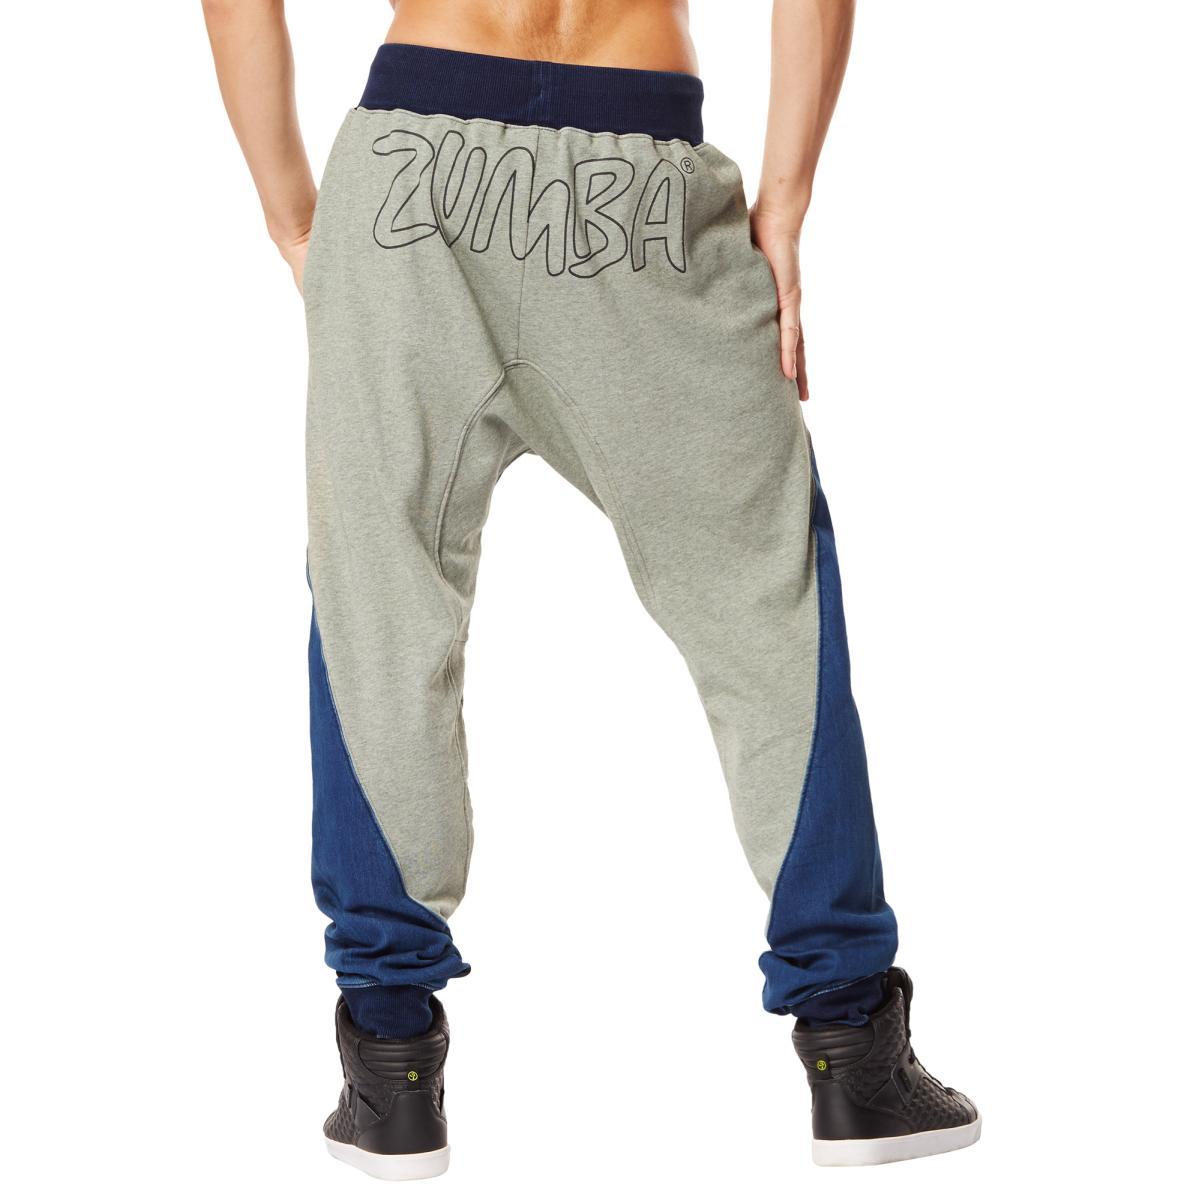 zumba Zumba New Workout Pants Sports Pants Men's Pants Women's Trousers  Cotton Fashion nd Loose Large Size | Lazada PH